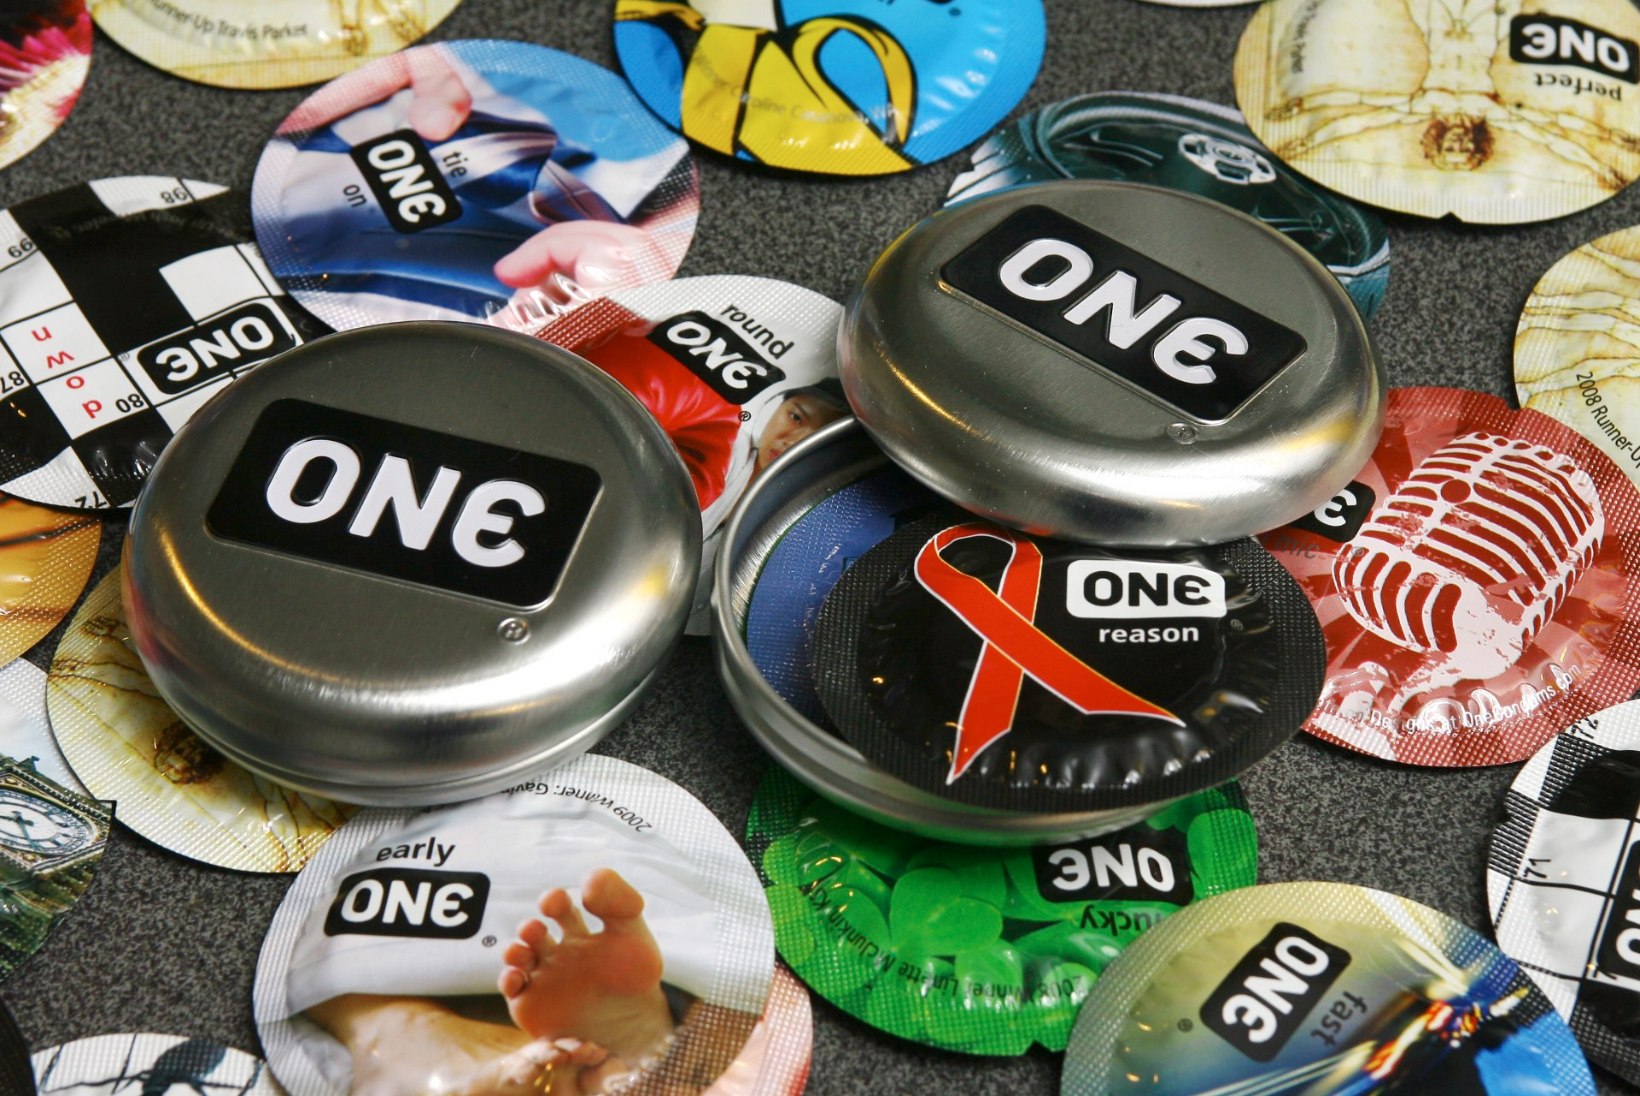 Üle poole sel aastal HIV-i nakatunutest on keskealised